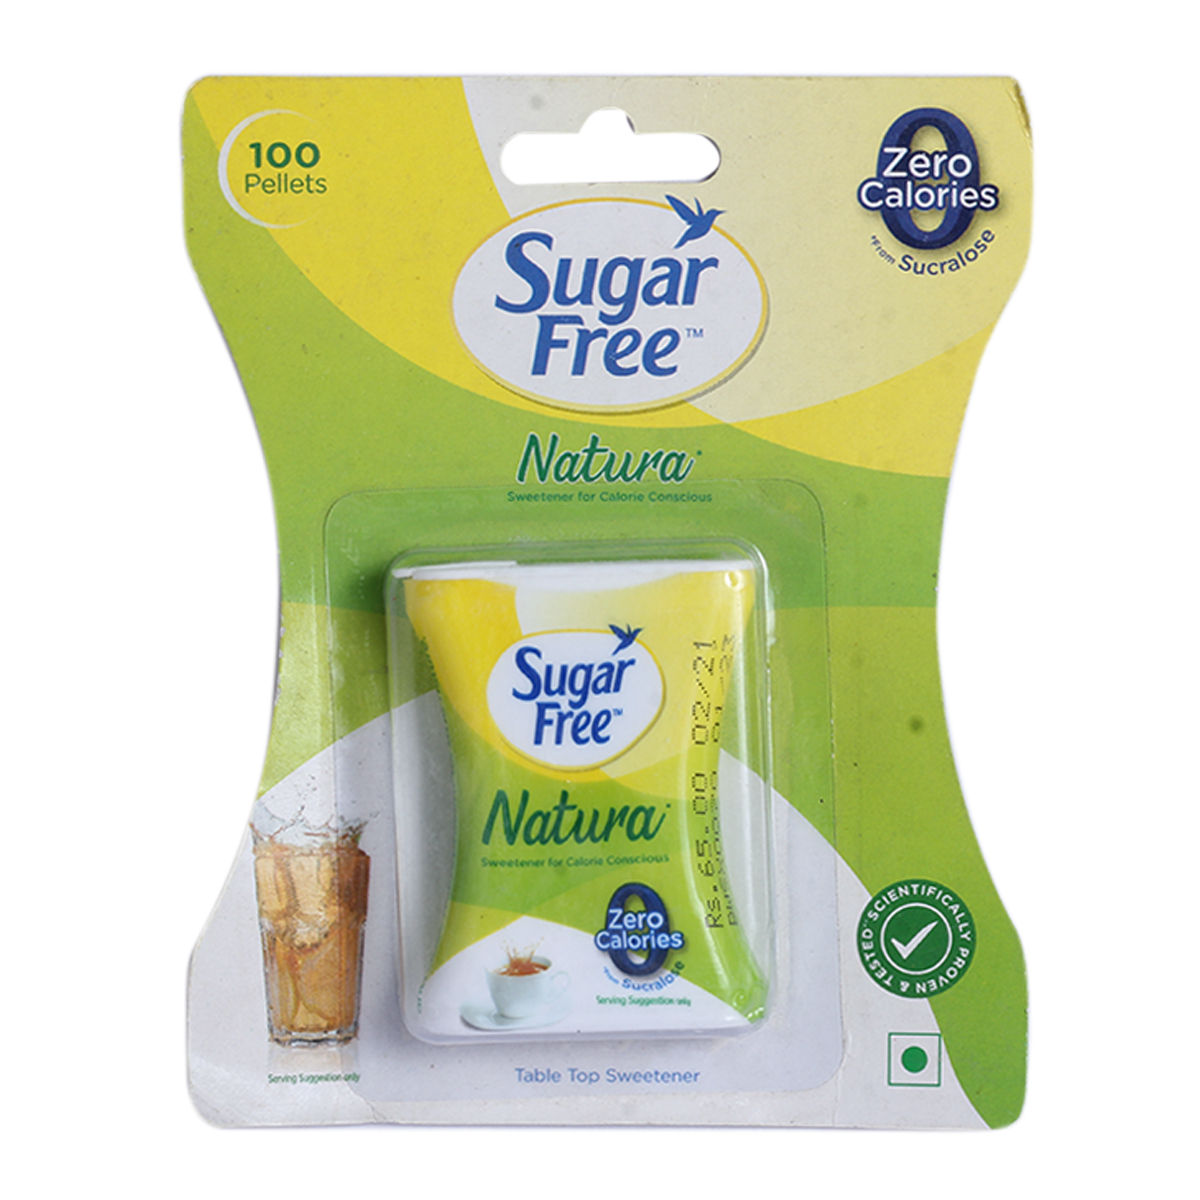 Sugar Free Natura Low Calorie Sweetener, 100 Pellets, Pack of 1 